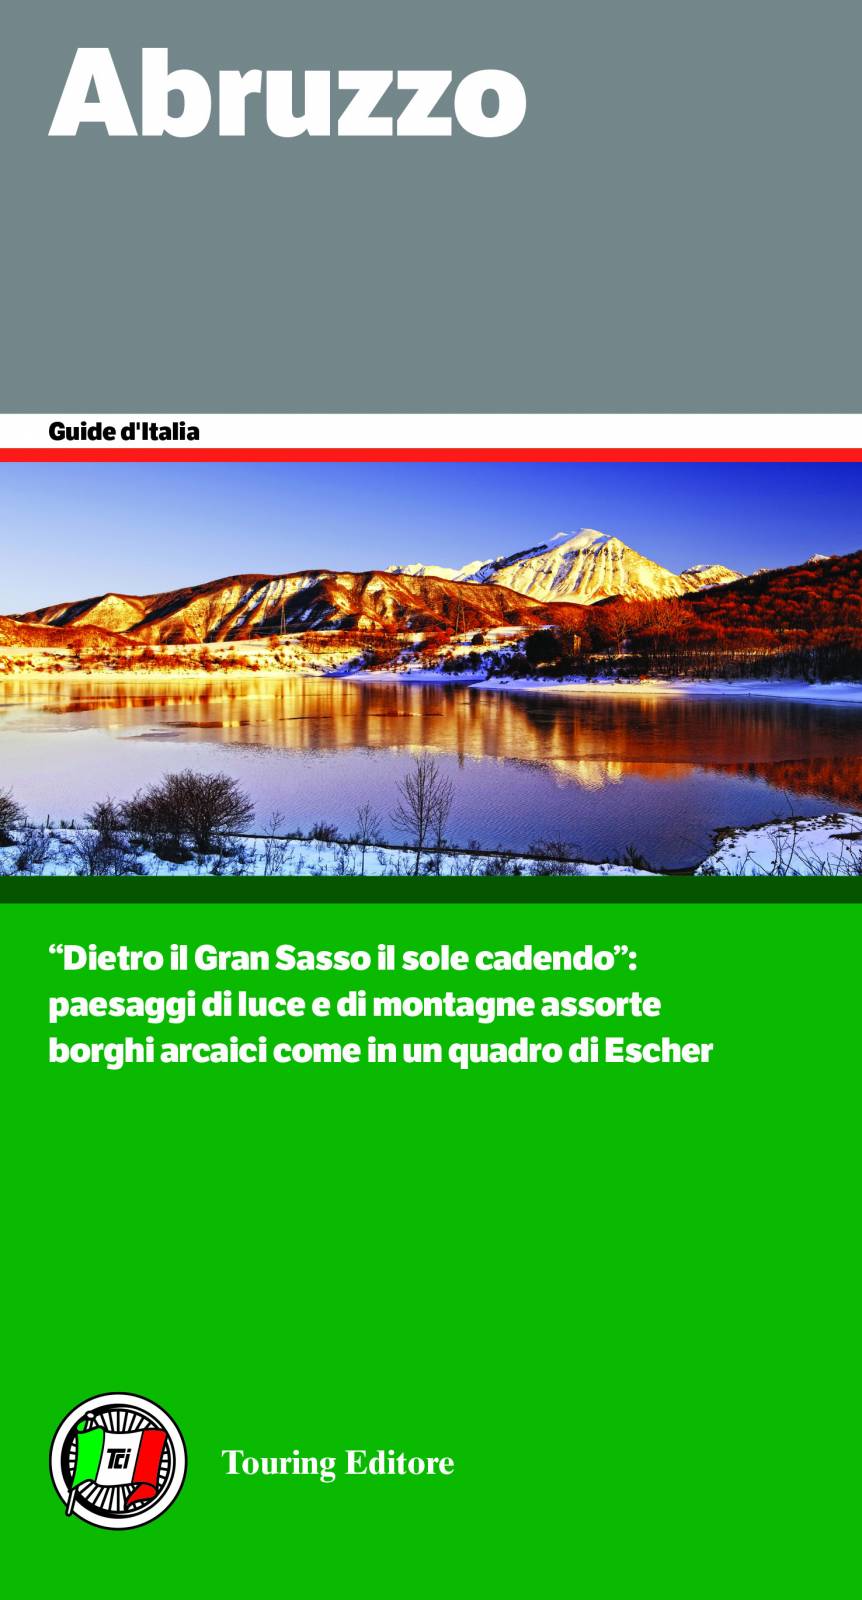 Guida d'Italia - Abruzzo